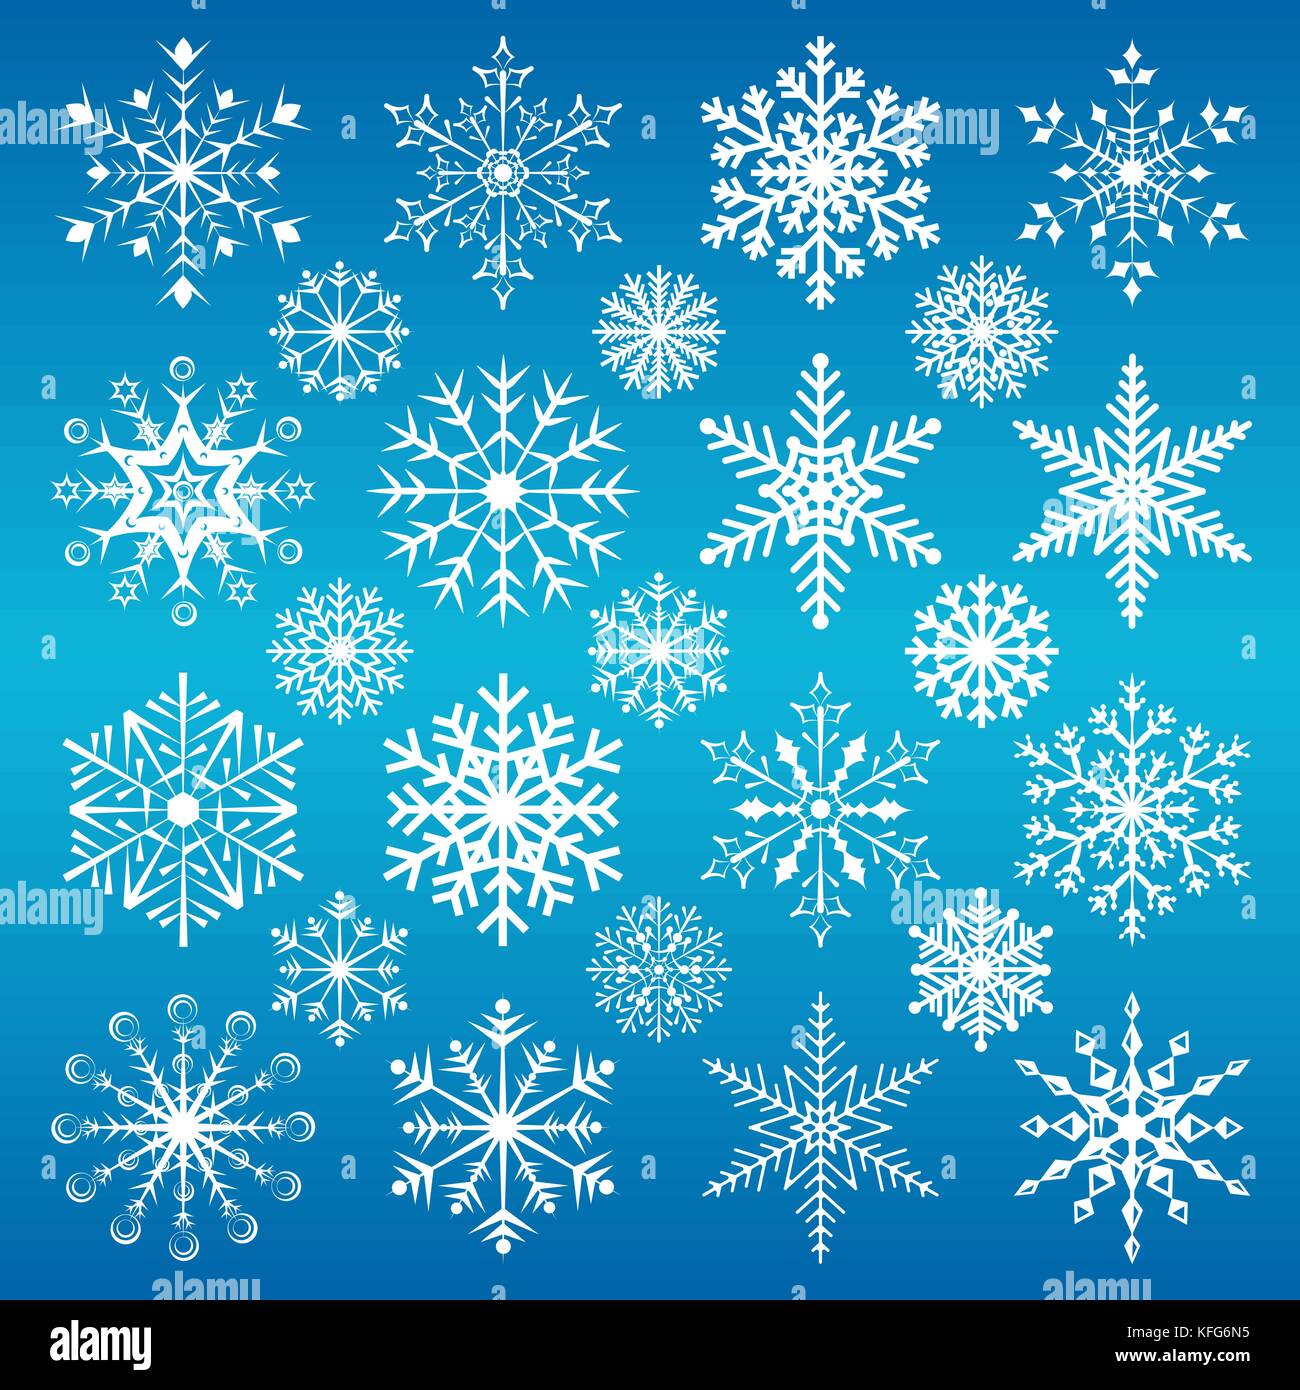 Sfondi Natalizi Blu.Il Natale Di Fiocchi Di Neve Su Sfondo Blu Immagine E Vettoriale Alamy